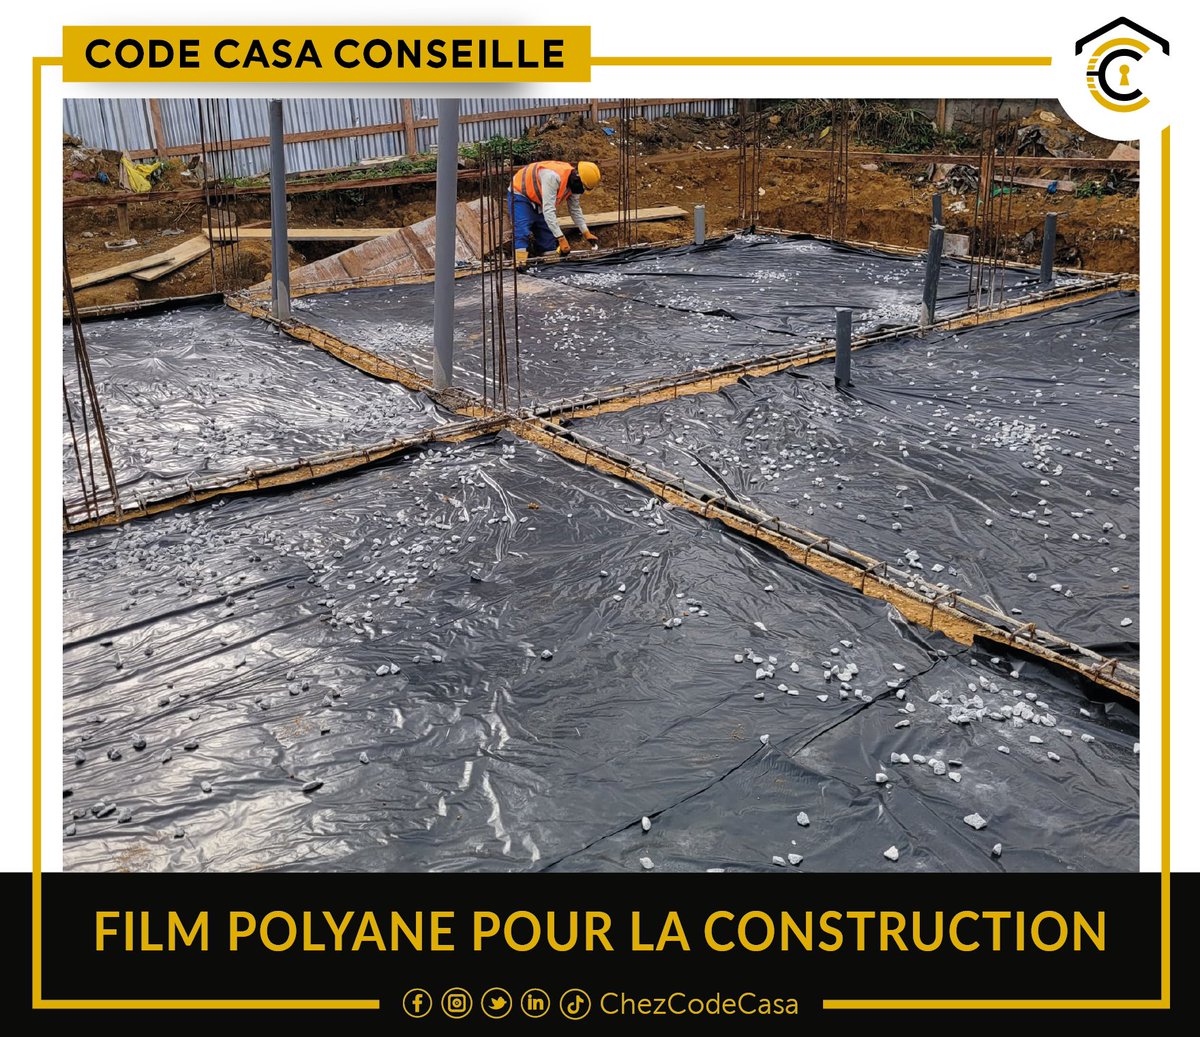 Le film polyane, aussi connu sous le nom de film polyéthylène est un matériau utilisé dans les projets de construction. 👷

Il joue le rôle de couche de protection, entre le sol et la surface en béton et permet de protéger celle-ci de l'humidité, des remontées d'eau, 
⤵️